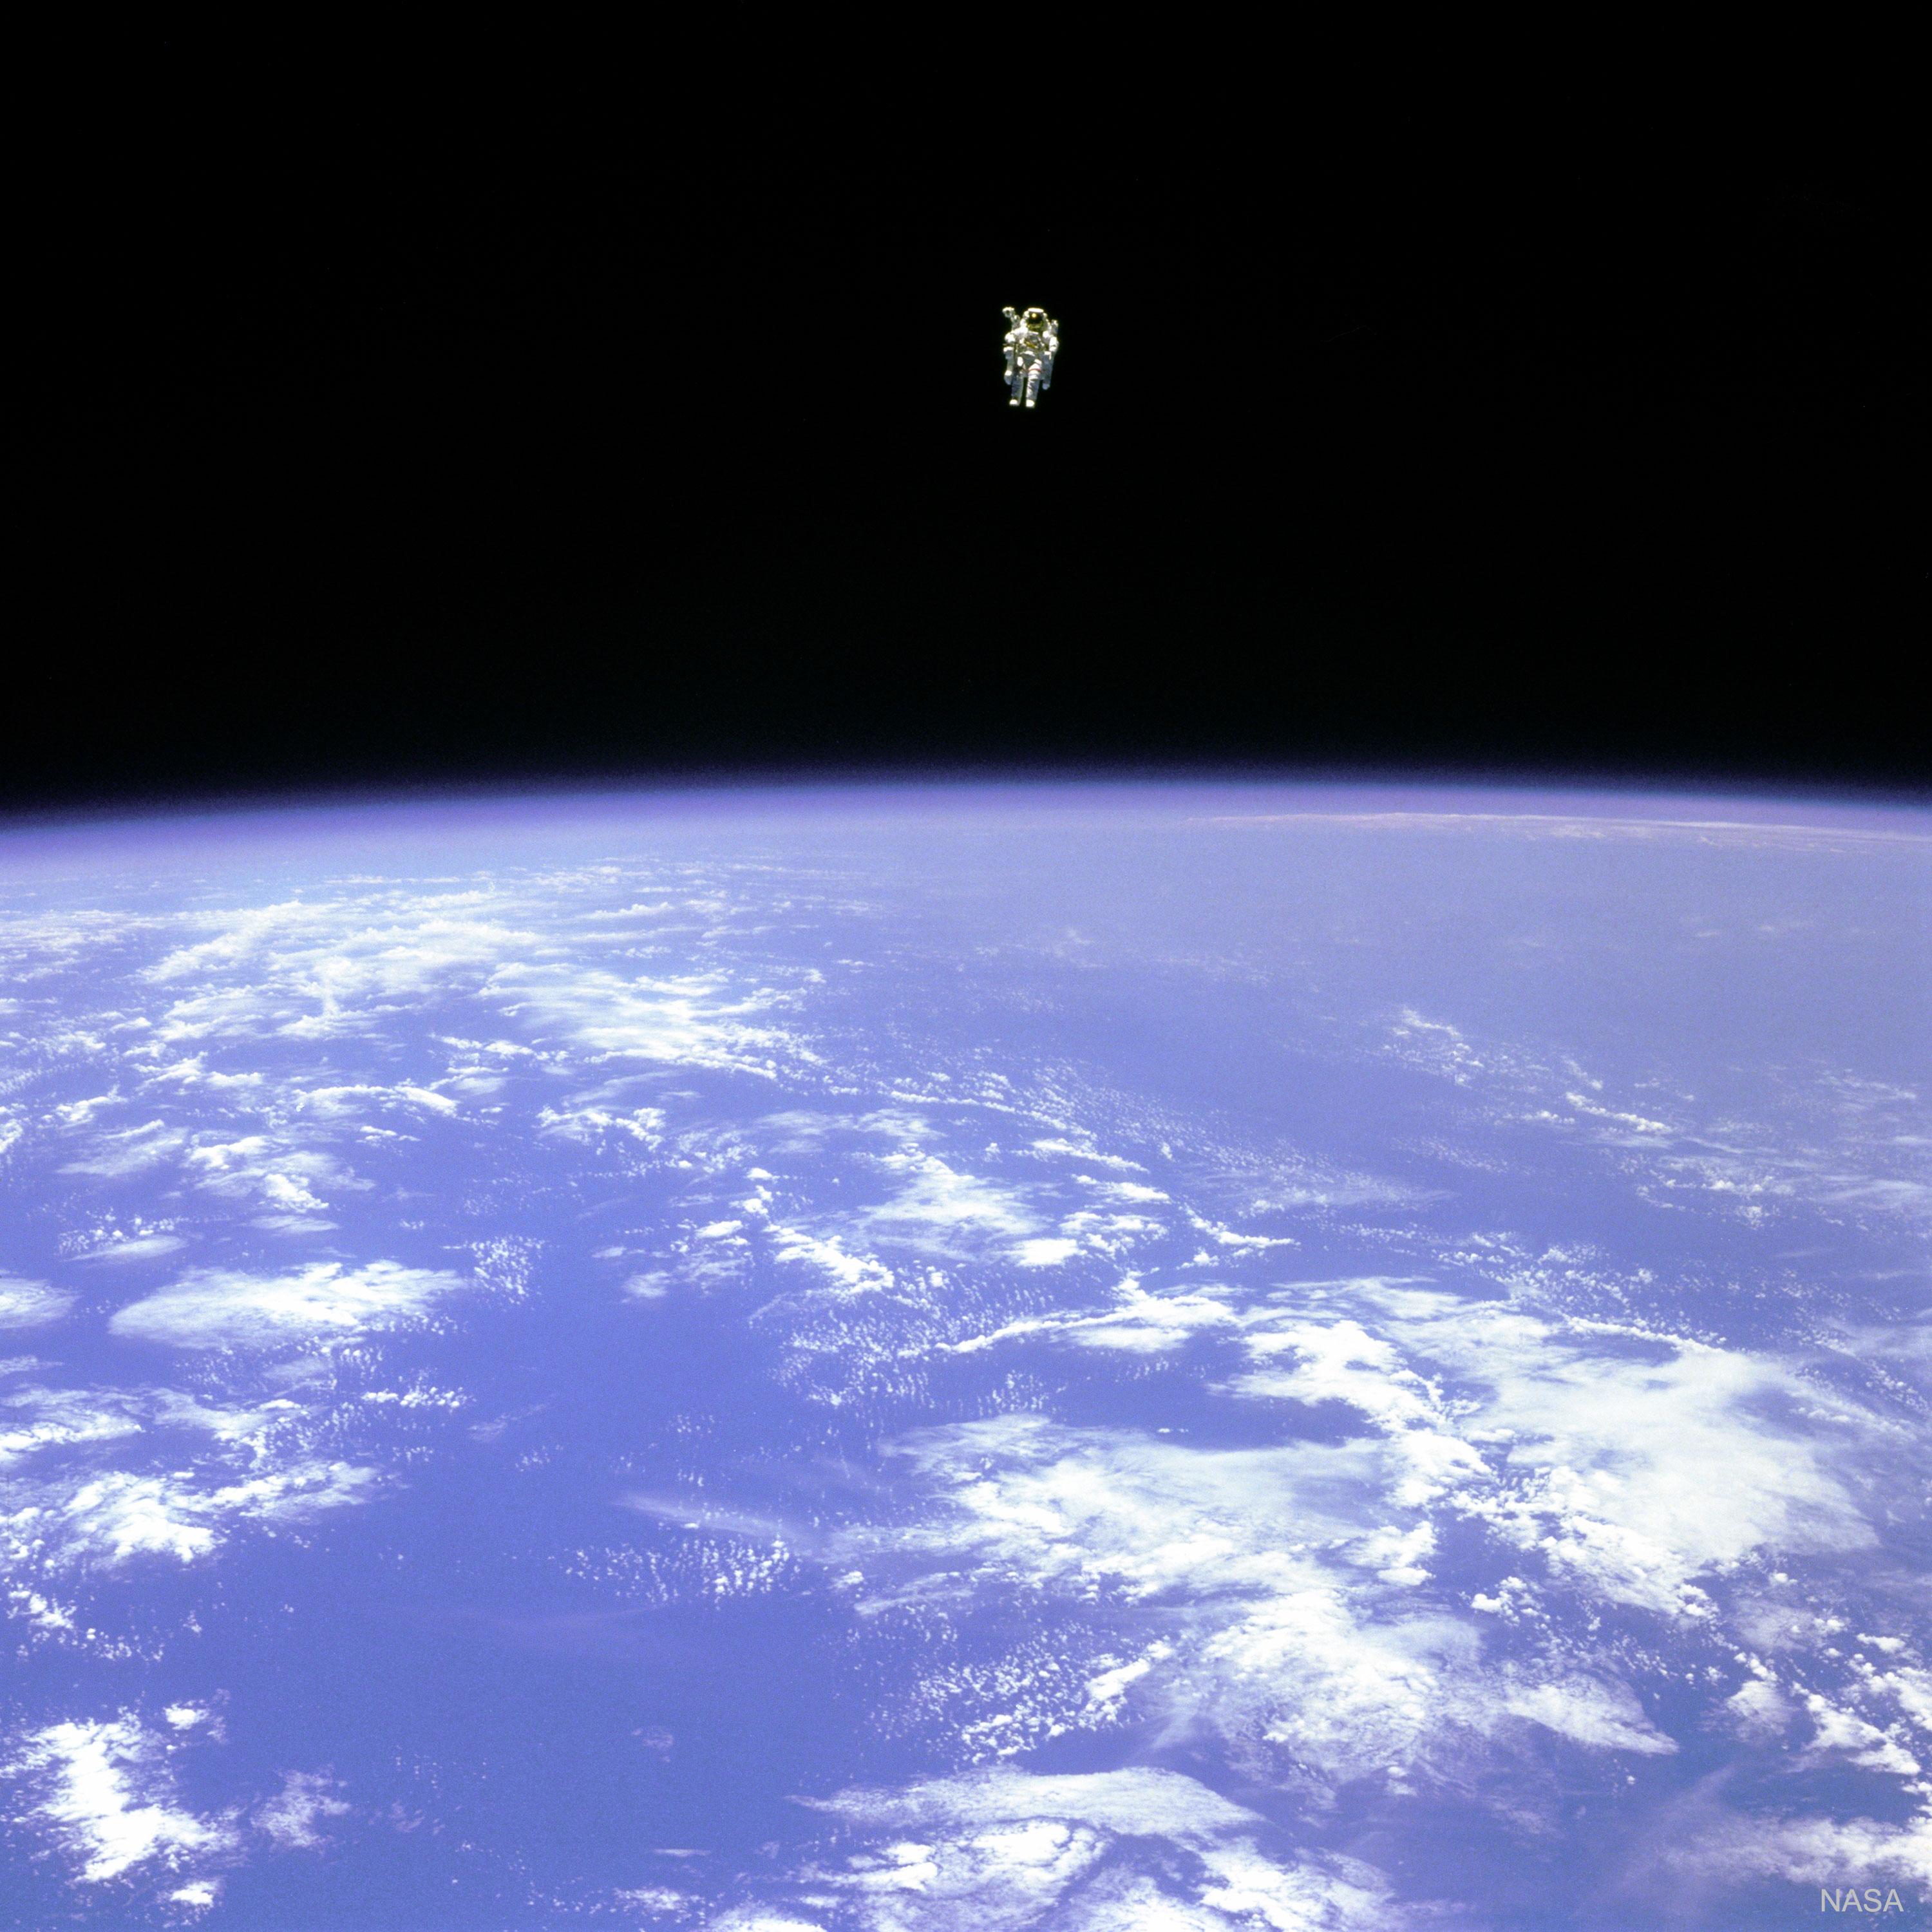 رائد فضاءٍ يحوم فوق الأرض. في الجزء العلوي من الصورة، يُرى رائد الفضاء قبالة عتمة الفضاء. في الجزء السفلي من الصورة، تكون الأرض زرقاء ساطعة مع سُحُبٍ بيضاء.